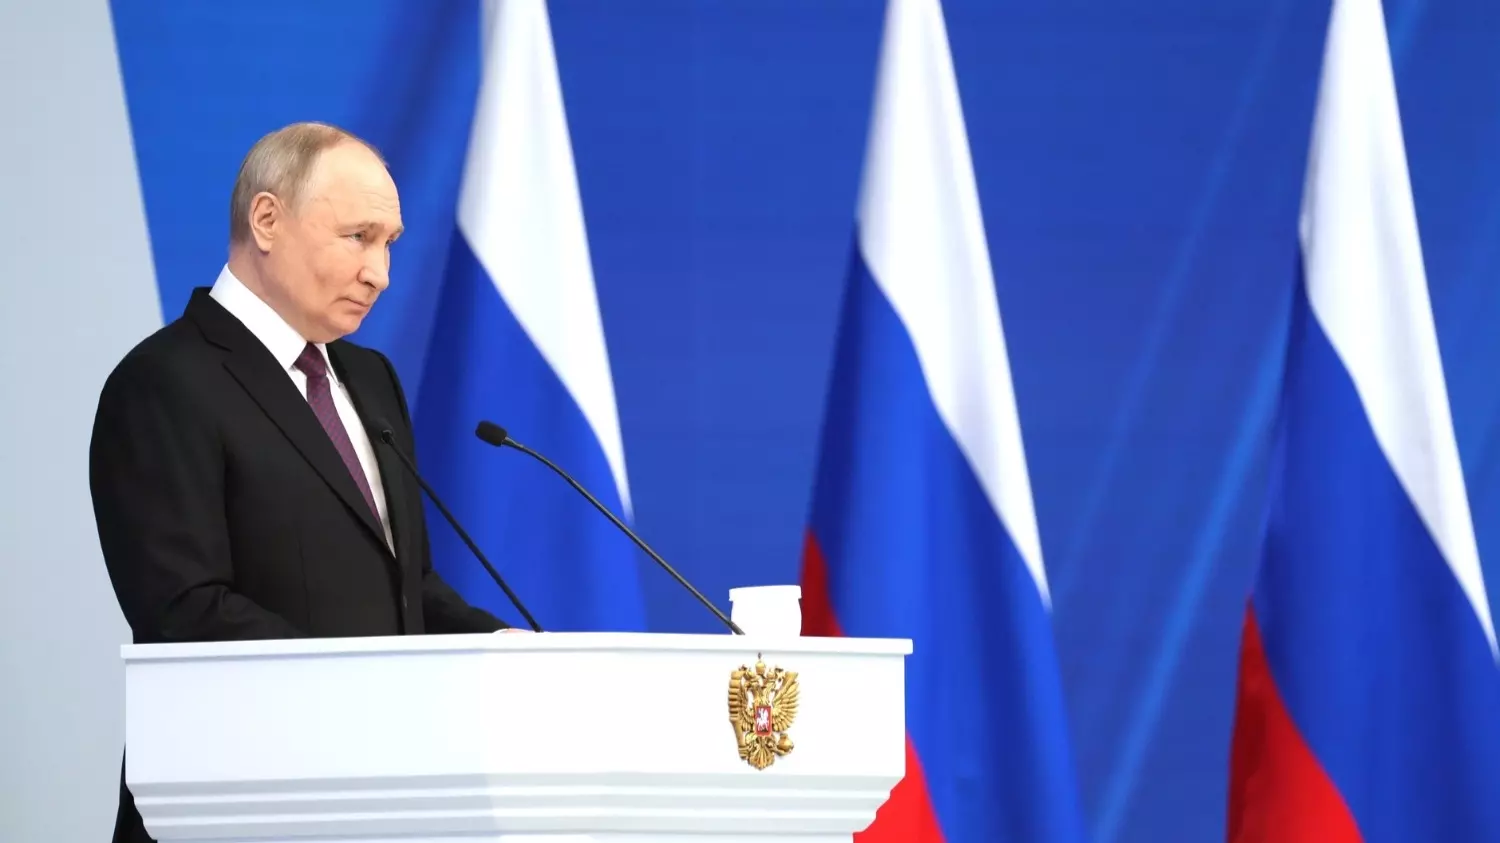 Выступление Путина длилось больше двух часов